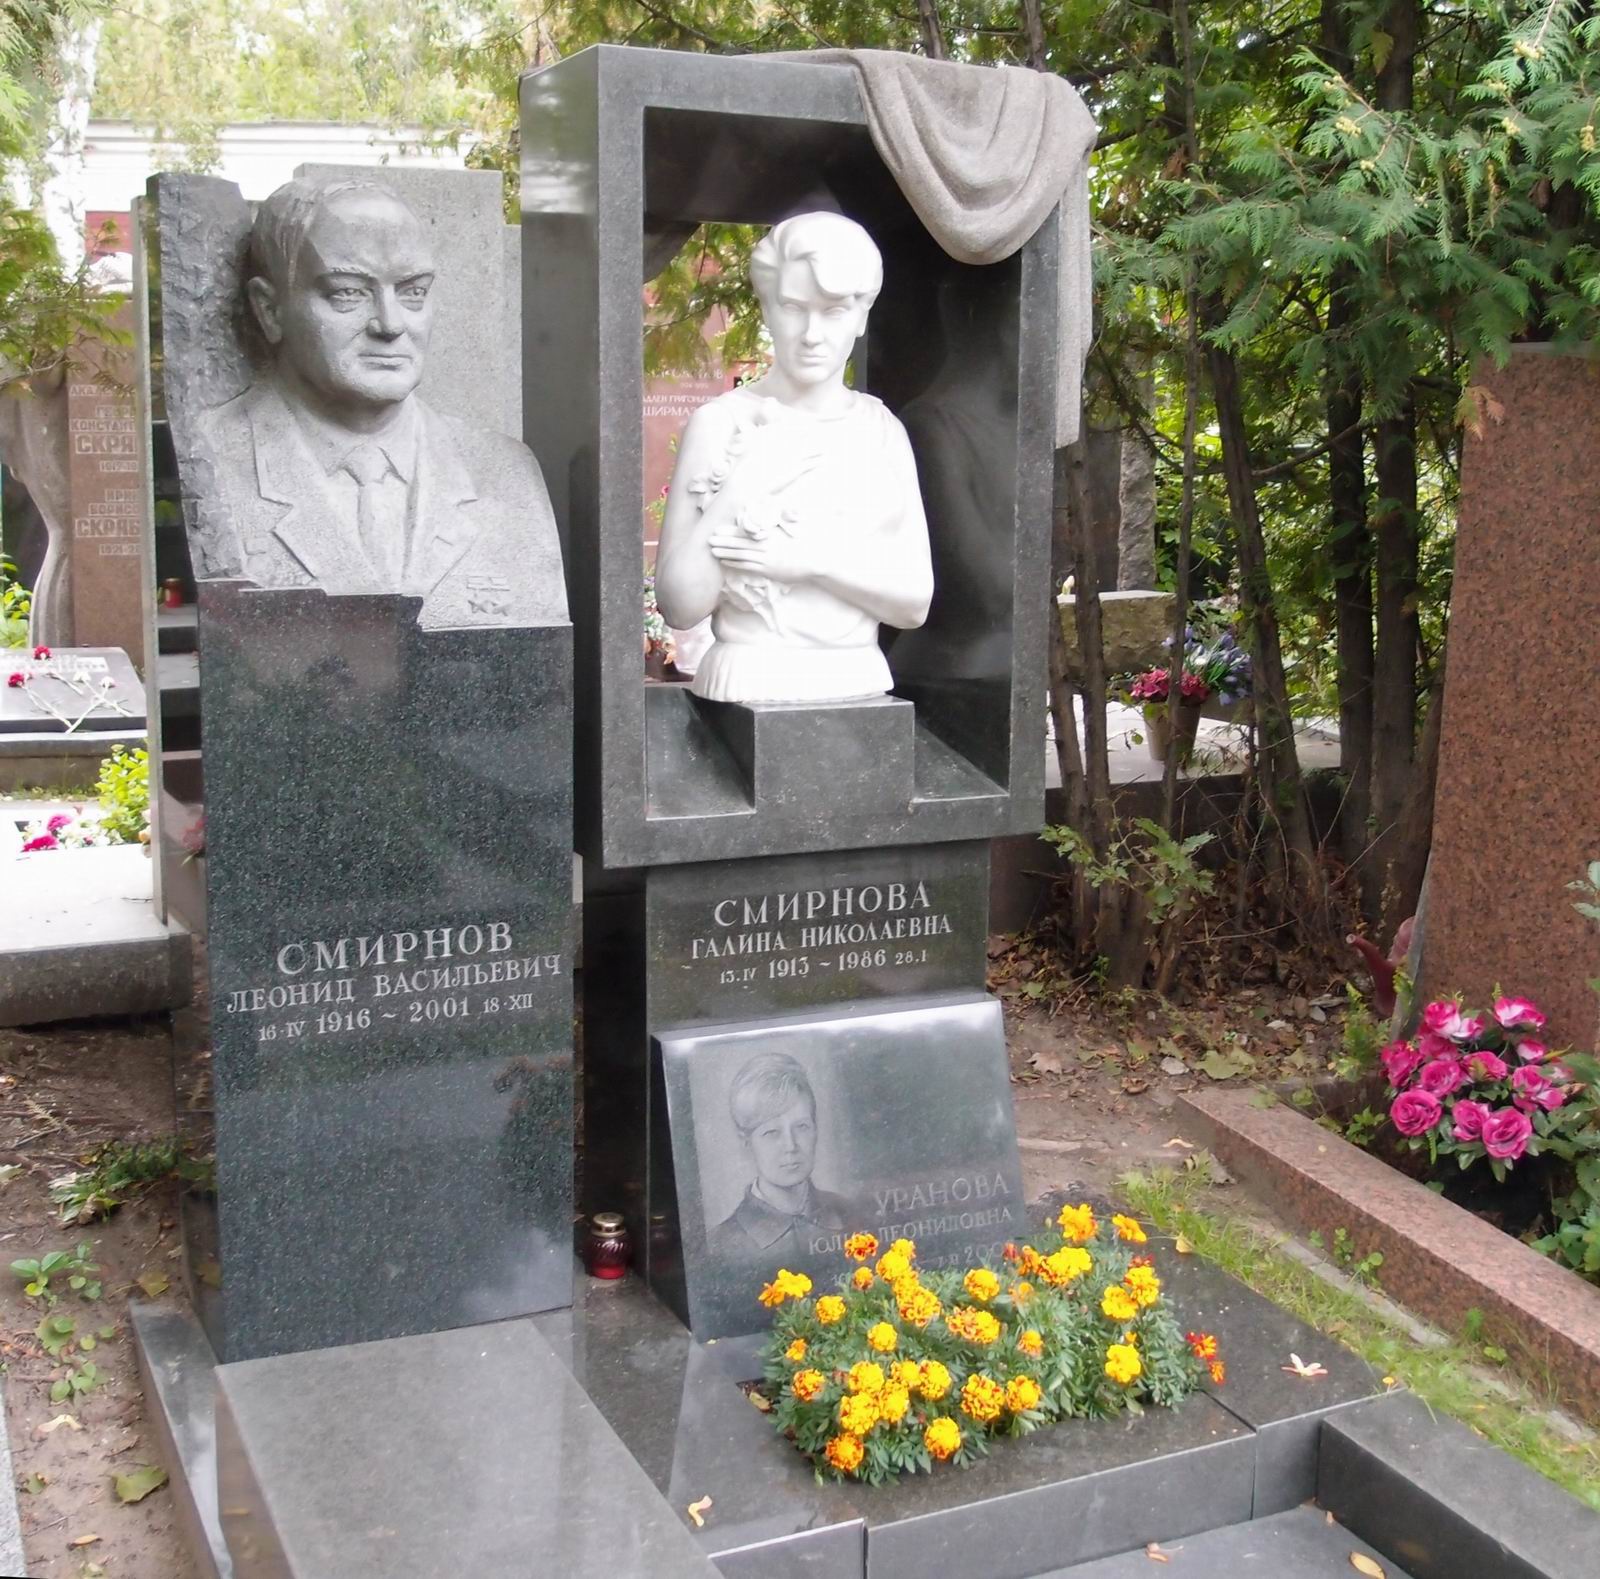 Памятник на могиле Смирнова Л.В. (1916-2001), на Новодевичьем кладбище (10-3-11). Нажмите левую кнопку мыши чтобы увидеть фрагмент памятника.